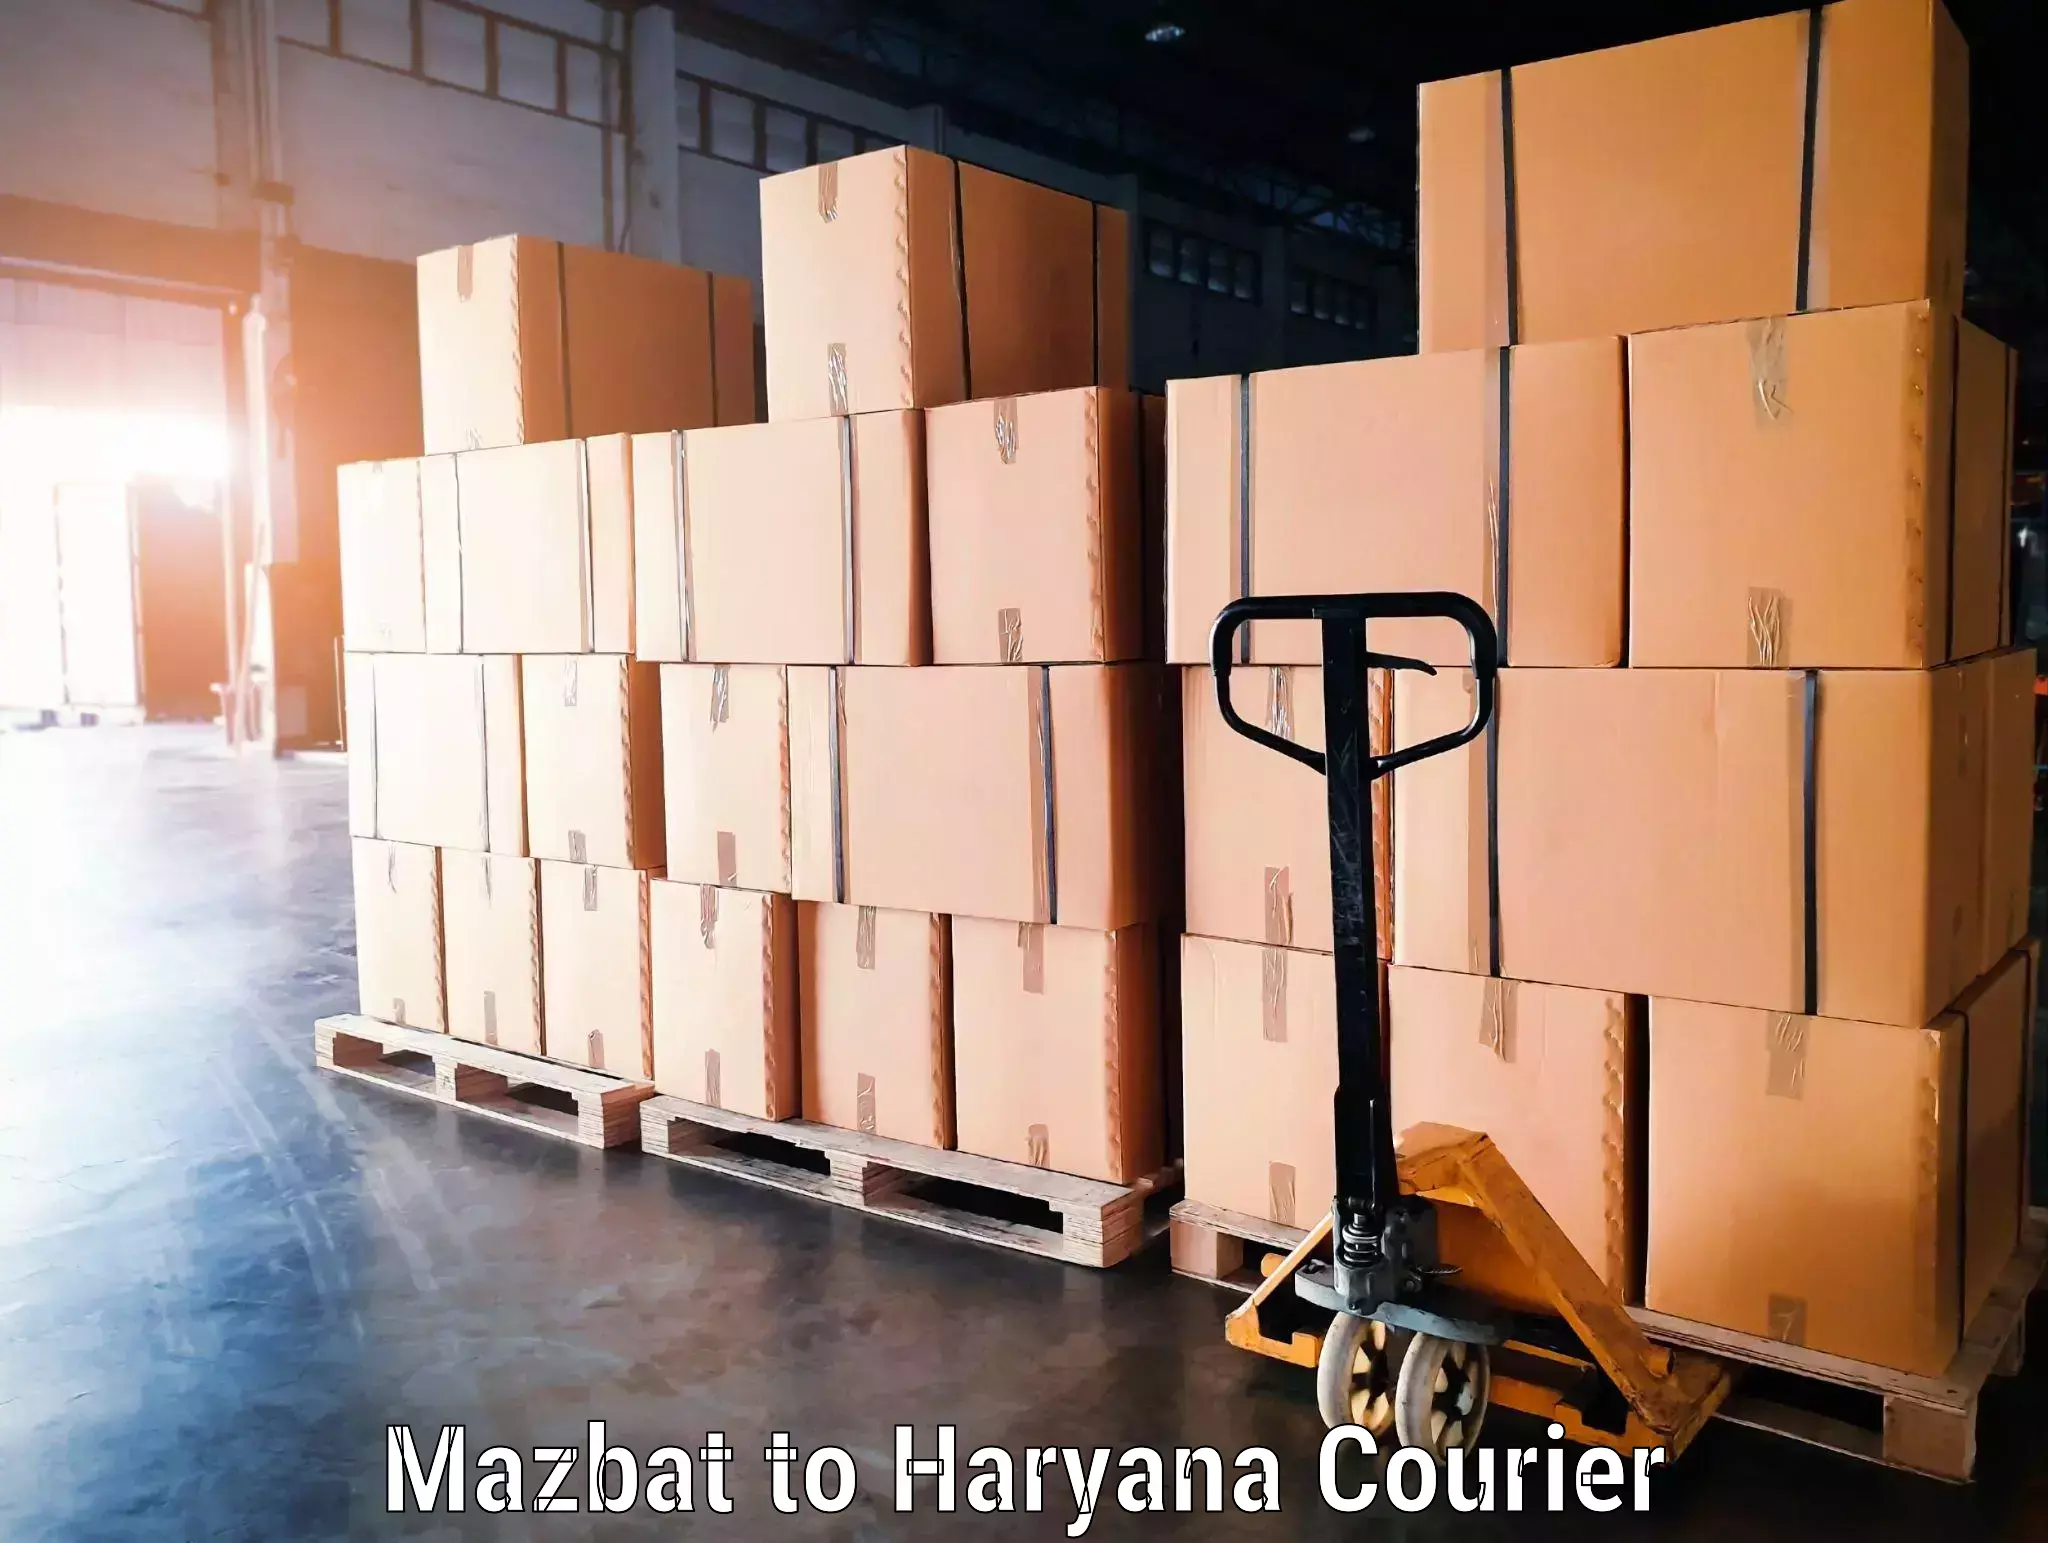 Luggage transport consultancy Mazbat to Kurukshetra